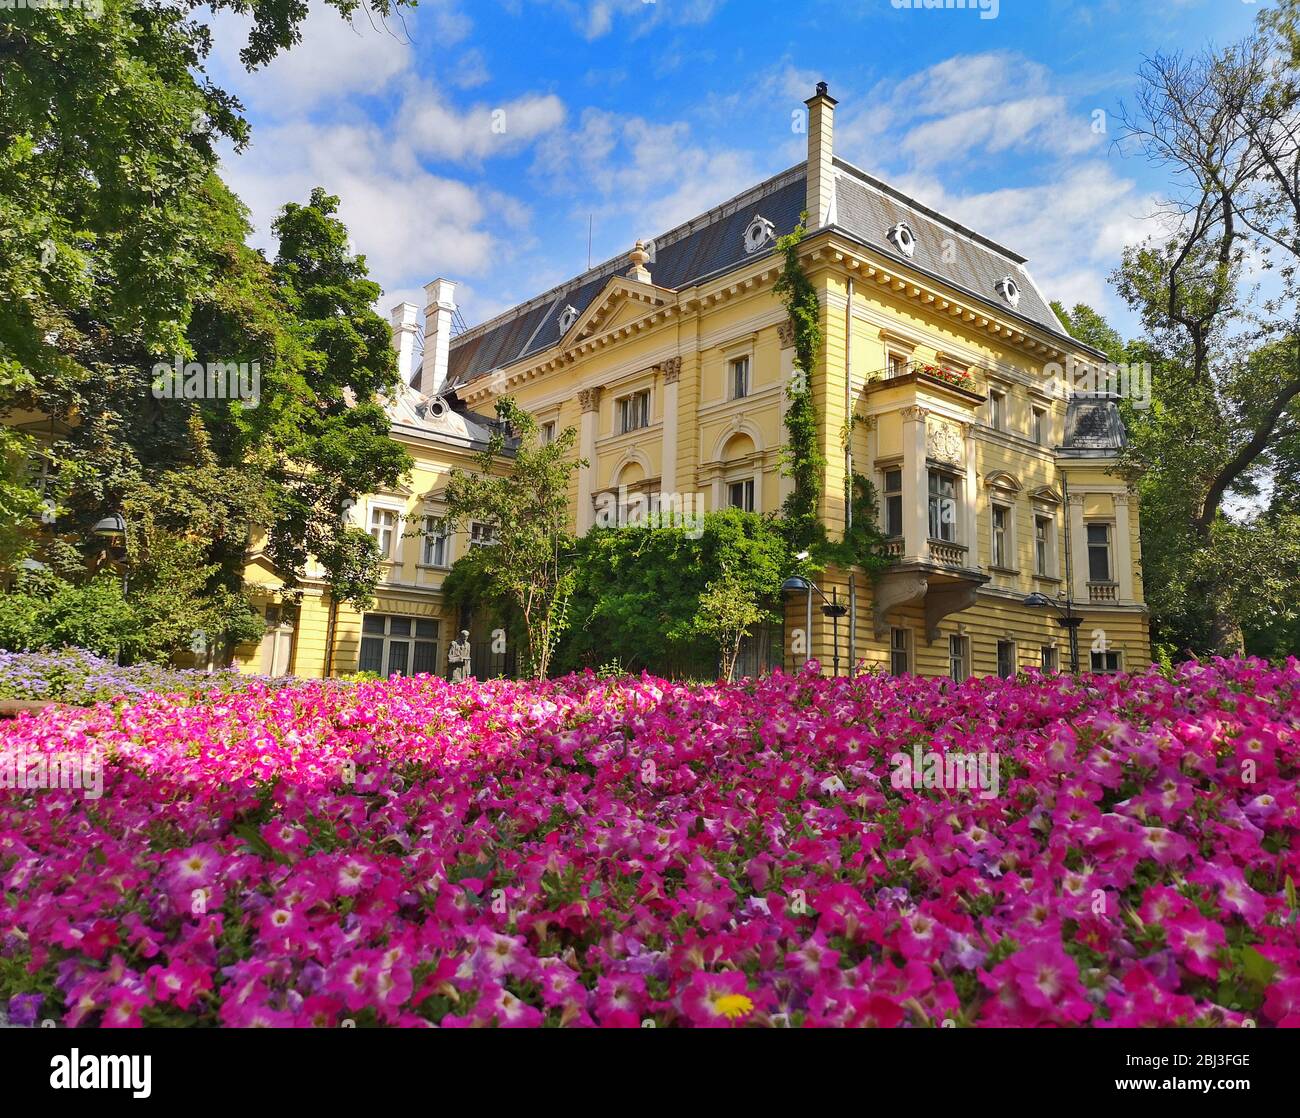 Paysage avec maison baroque jaune entouré d'arbres verts et un champ de fleurs roses fleuries au milieu de Sofia, Bulgarie Banque D'Images